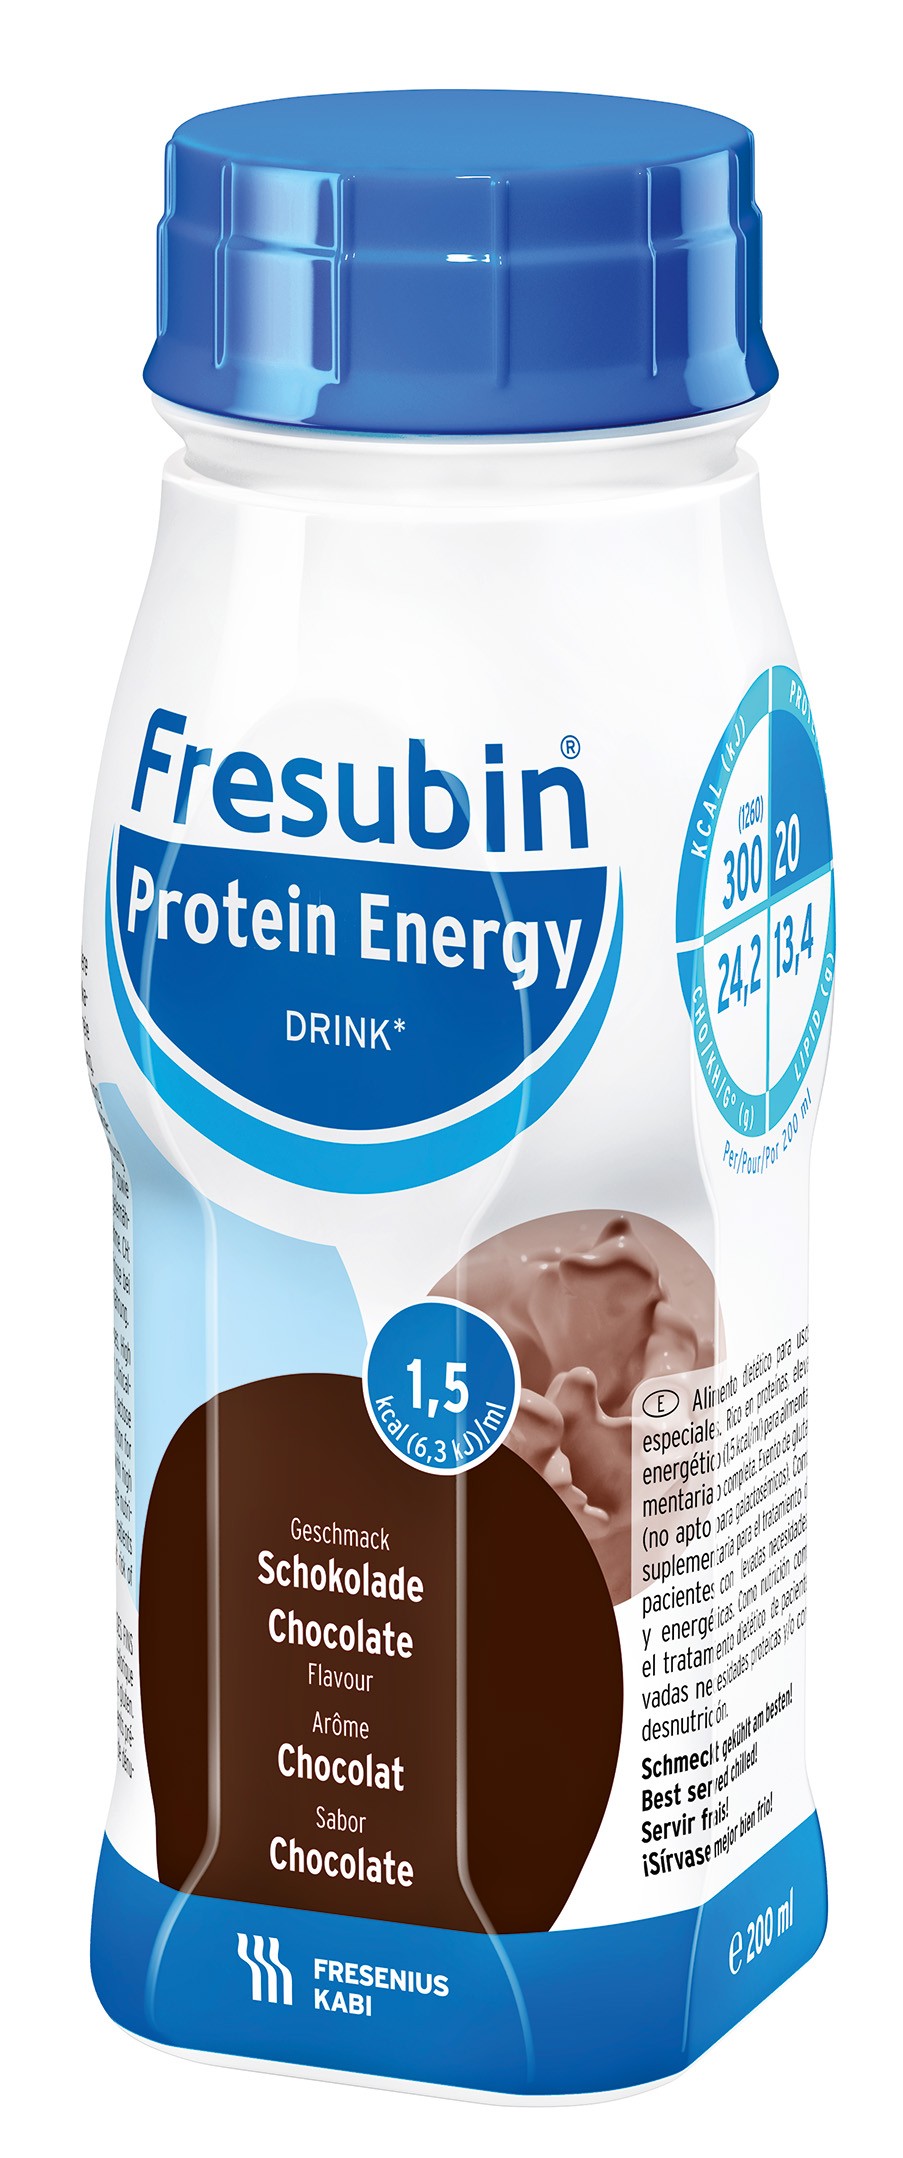 Bautura Fresubin Protein Energy 1,5kcal cu aroma de ciocolata, 200ml, Fresenius Kabi